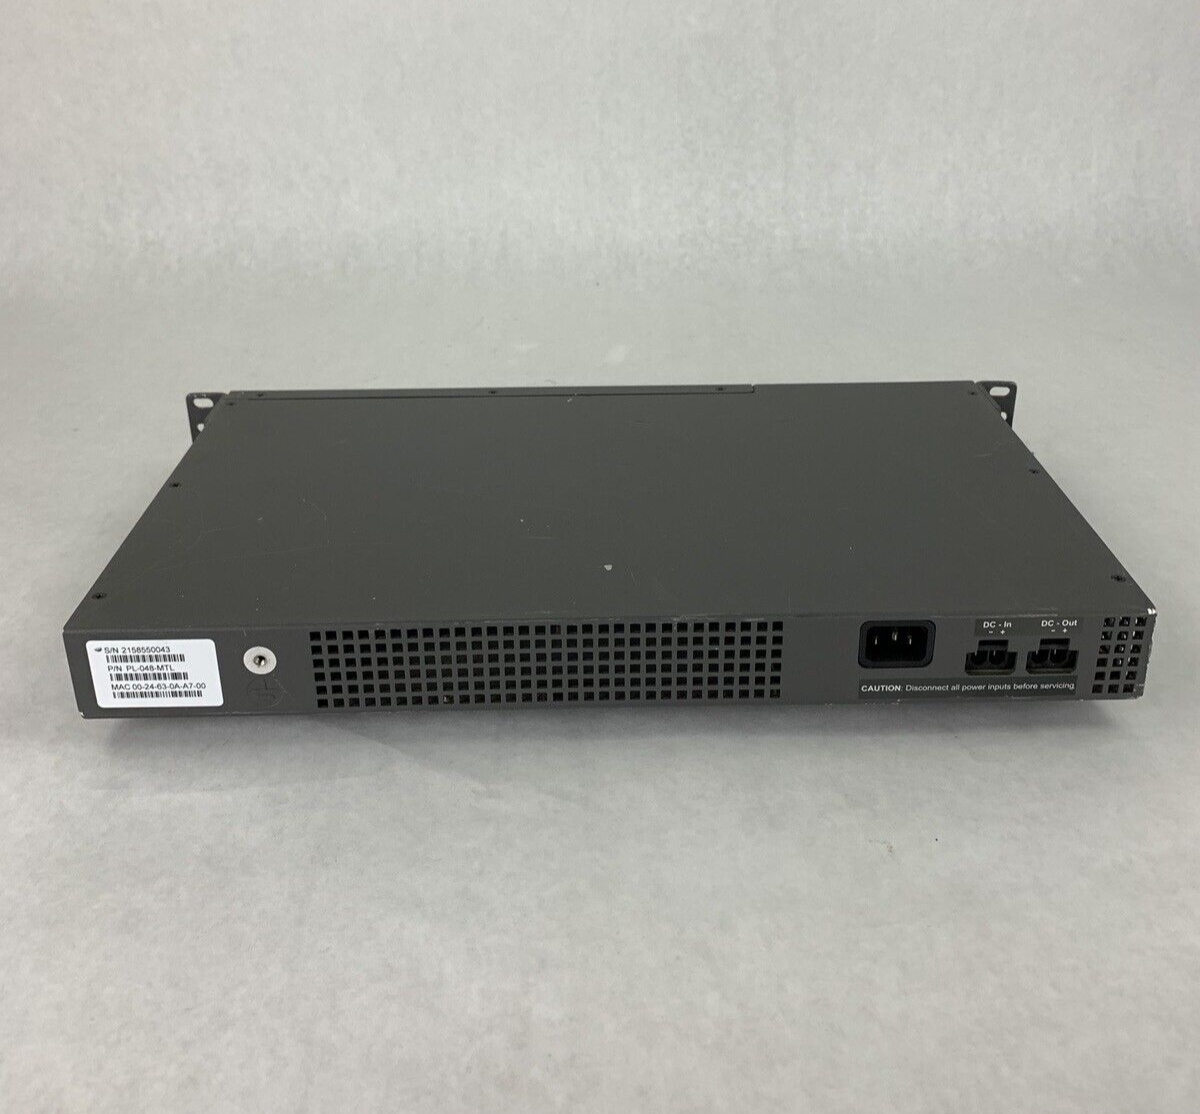 Mitel Unit T48 Port Streamline Switch 50006594 PL-048-MTL Tested